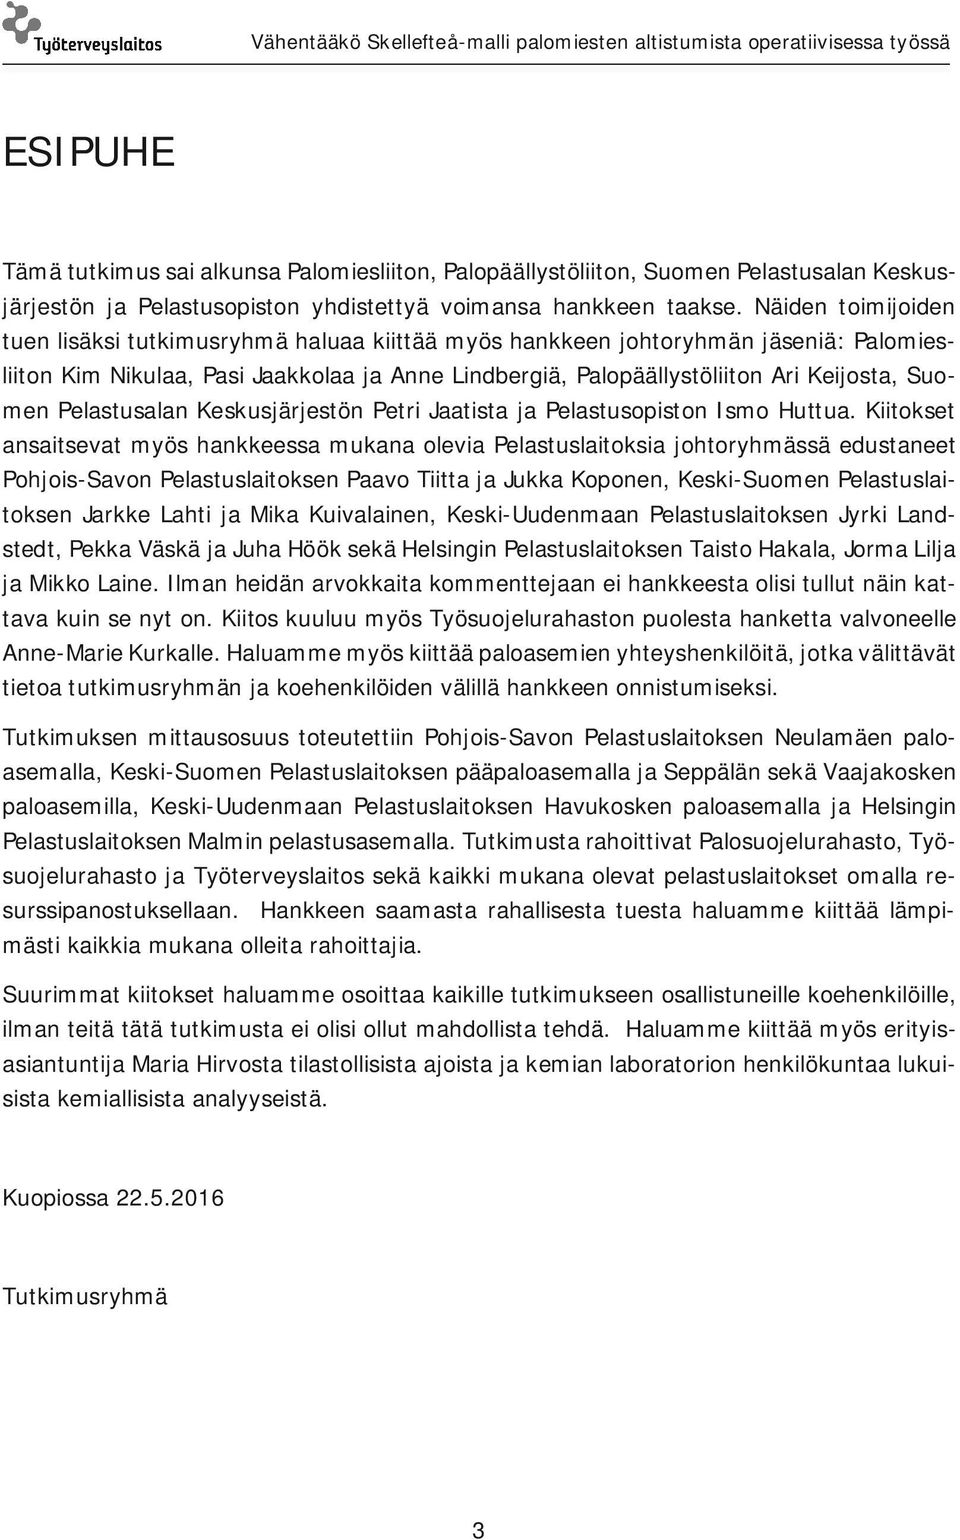 Pelastusalan Keskusjärjestön Petri Jaatista ja Pelastusopiston Ismo Huttua.